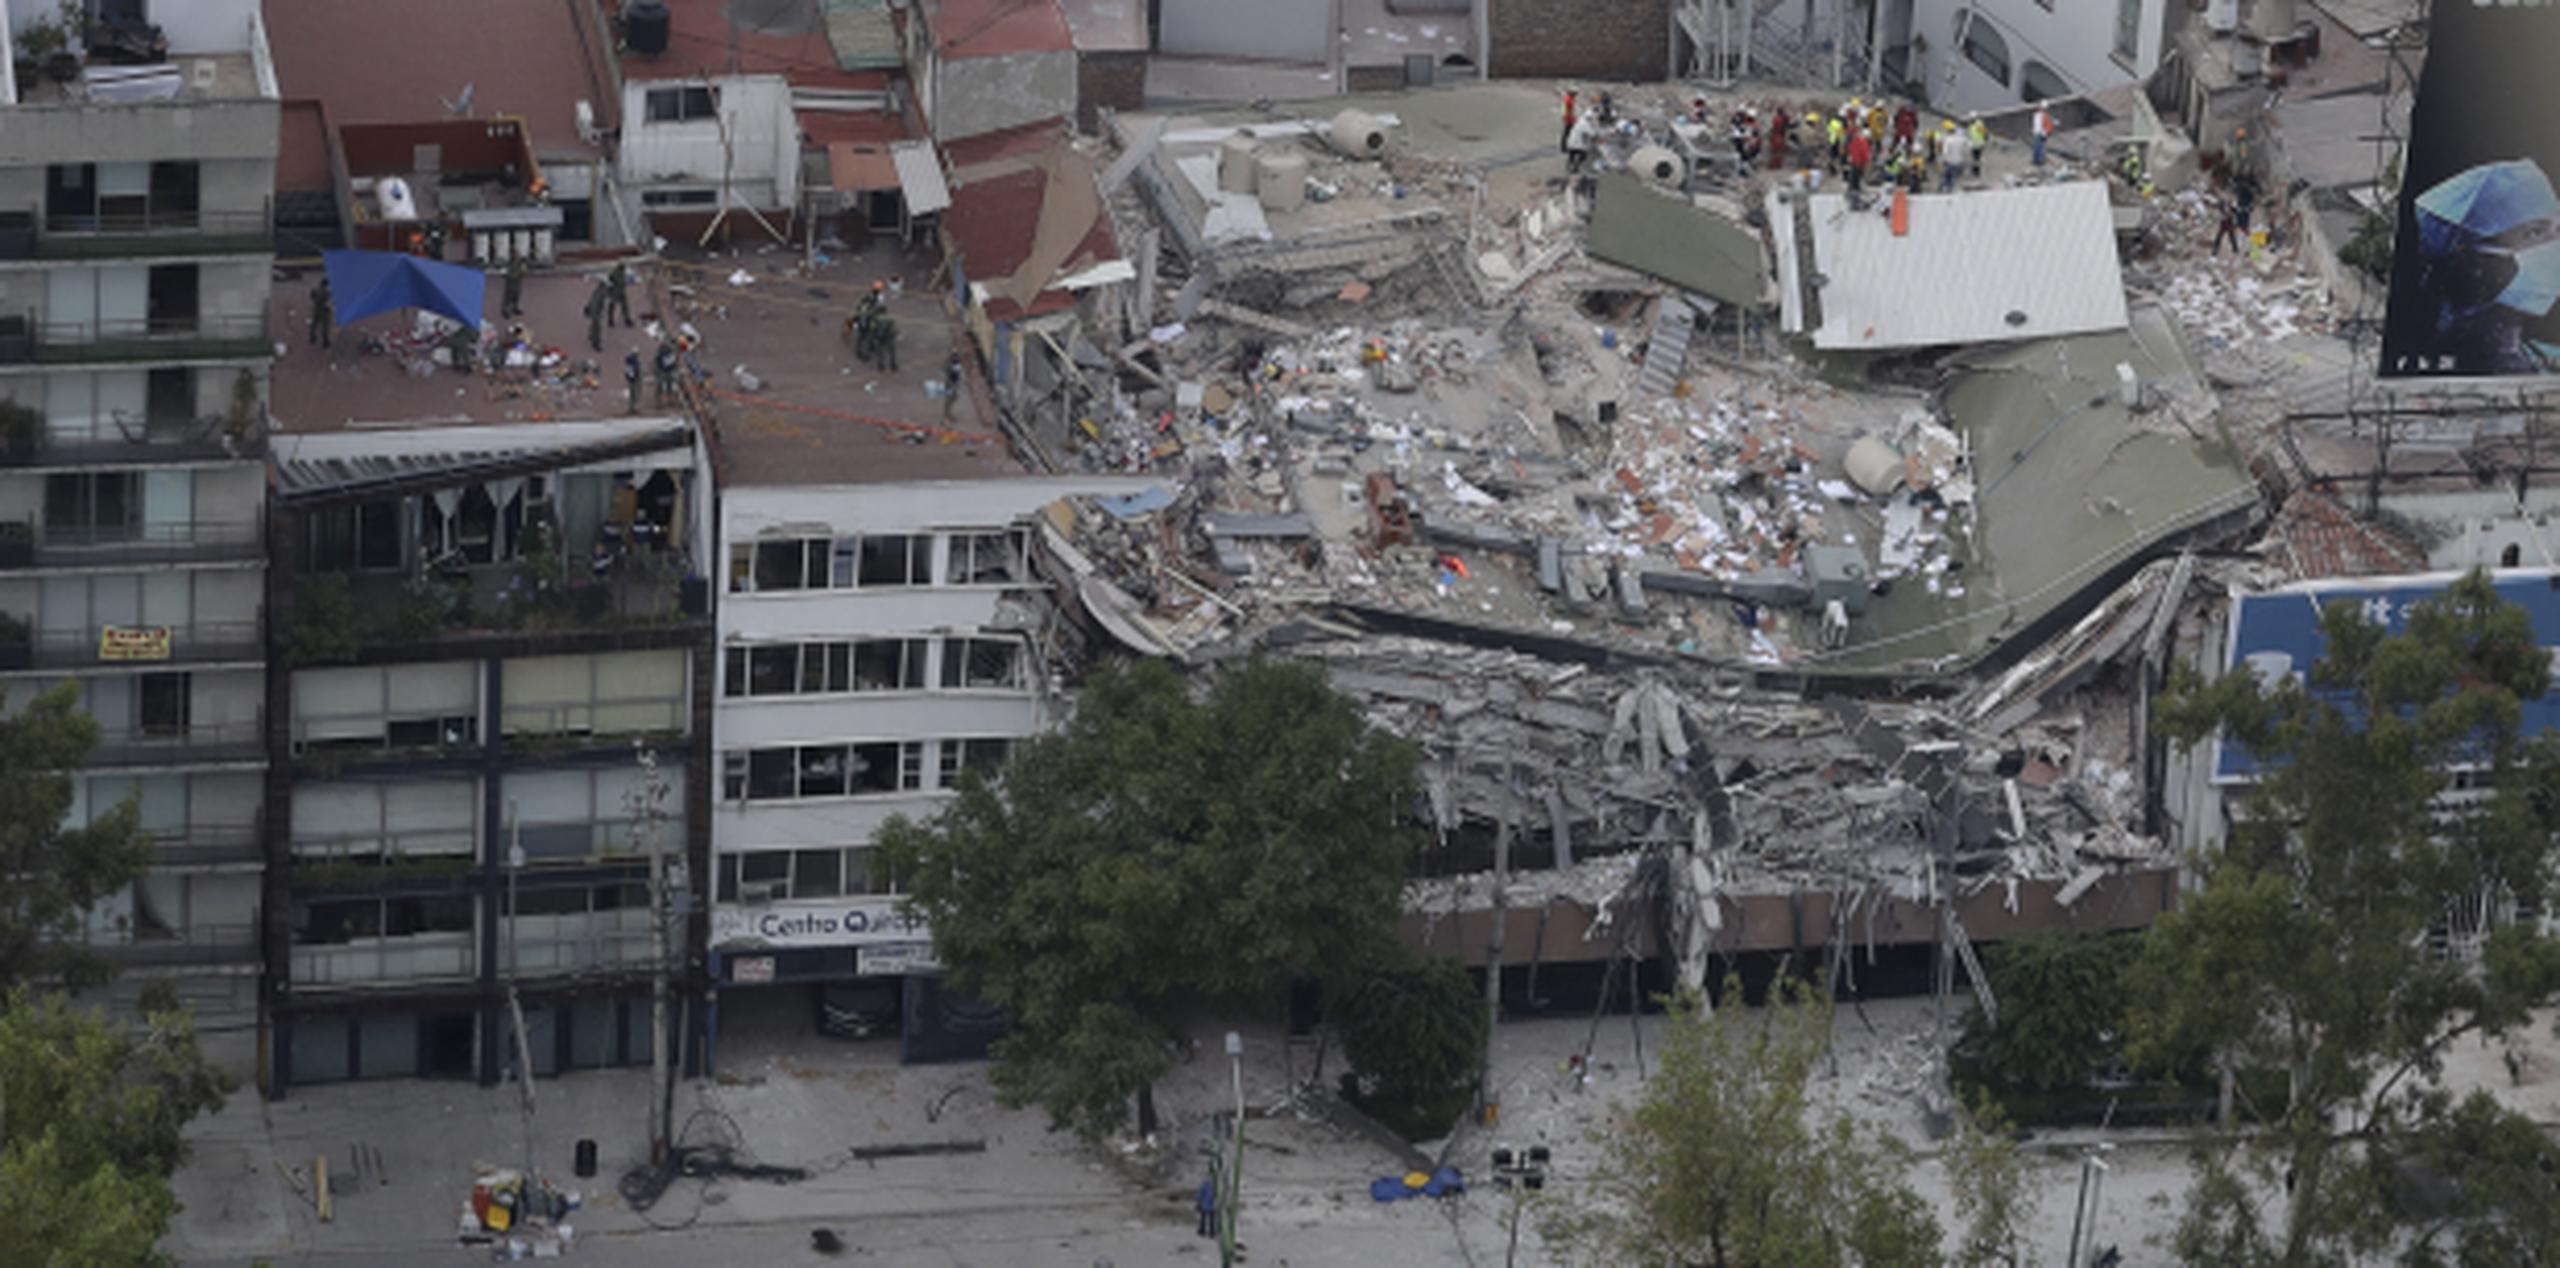 Al menos 94 personas murieron en Ciudad de México, 71 en el estado de Morelos, 43 en Puebla, 12 en el estado de México que rodea la capital, cuatro en Guerrero y uno en Oaxaca. (AP / Rebecca Blackwell)
